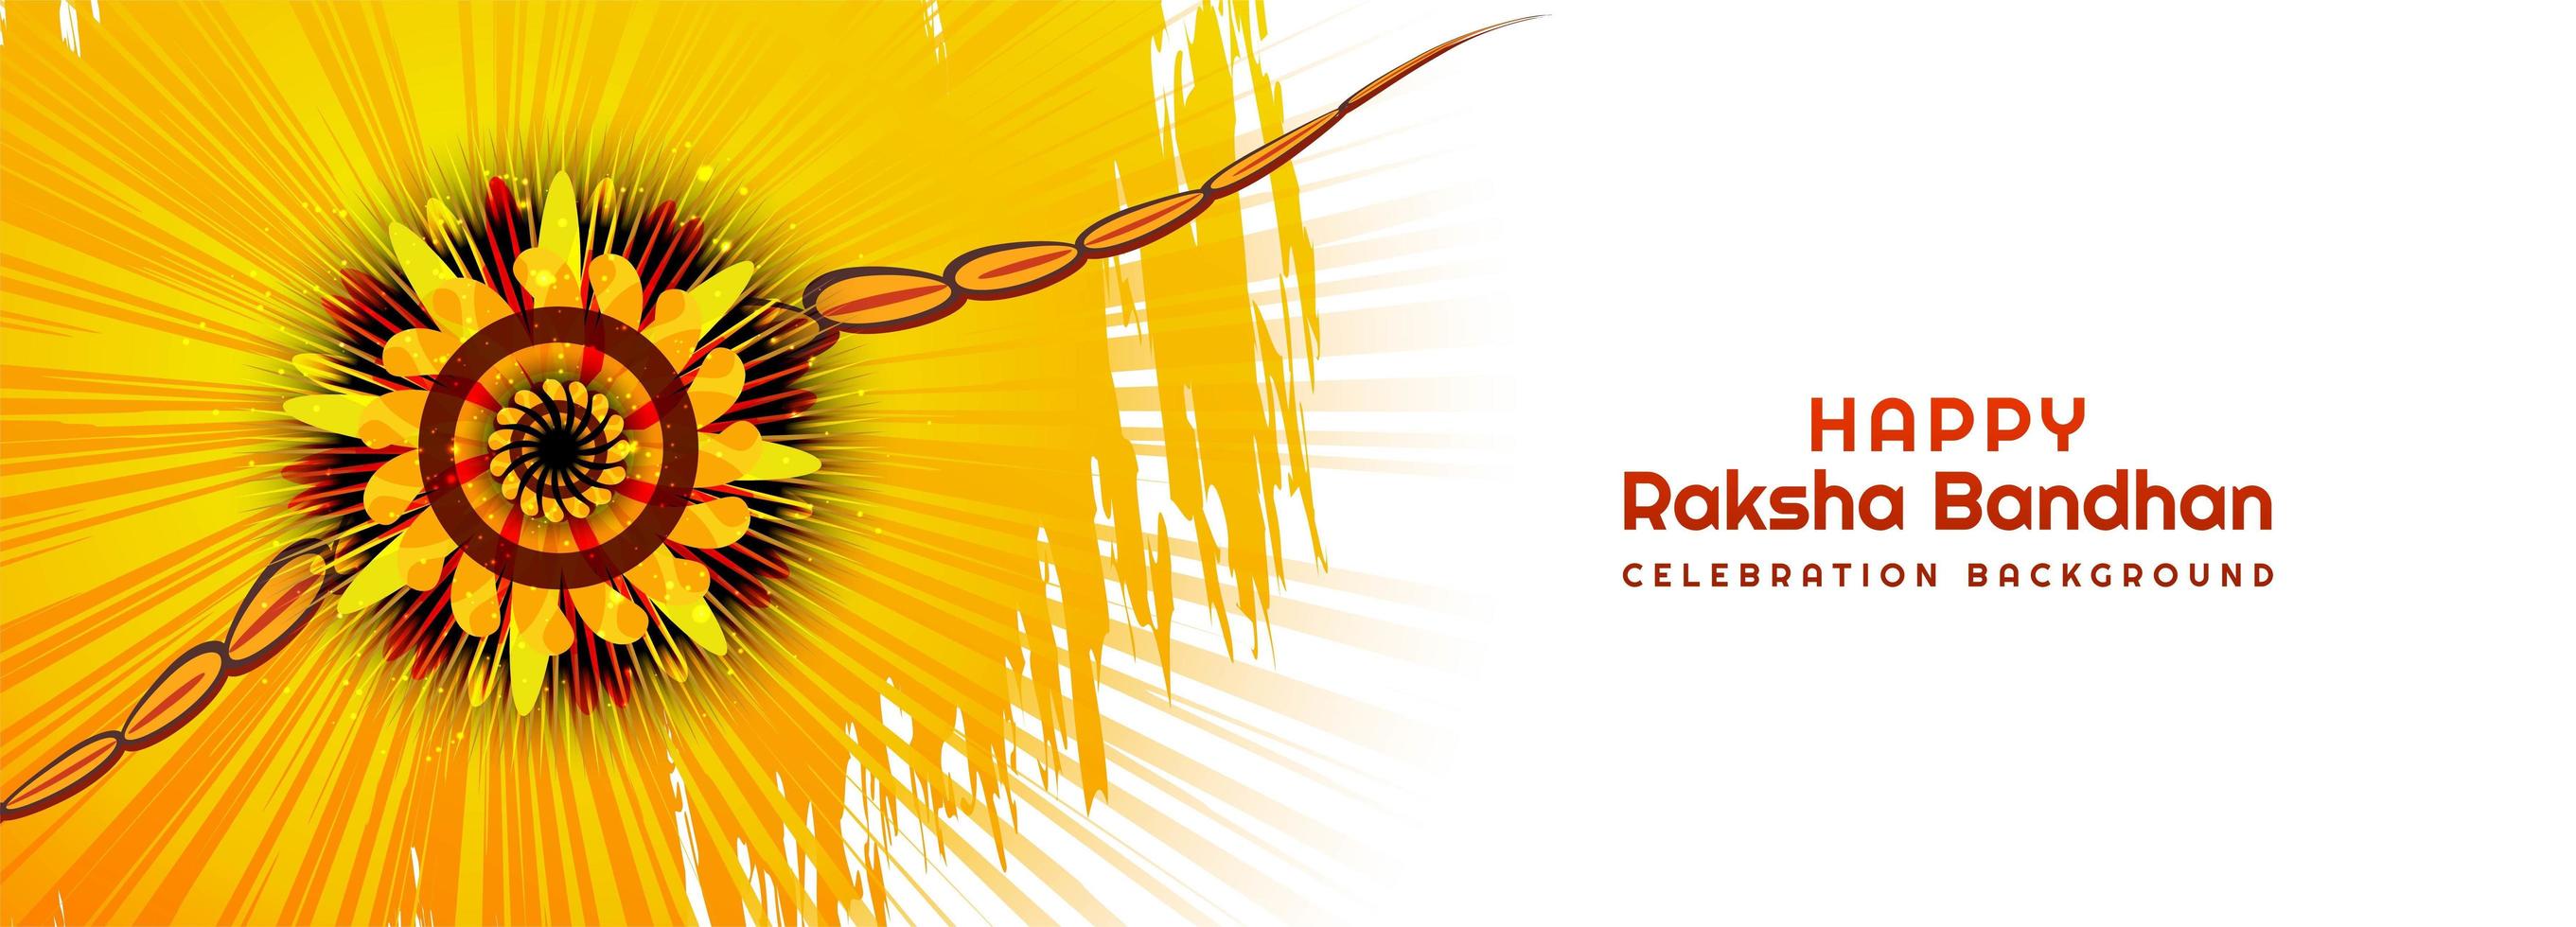 conception de bannière de festival hindou raksha bandhan vecteur